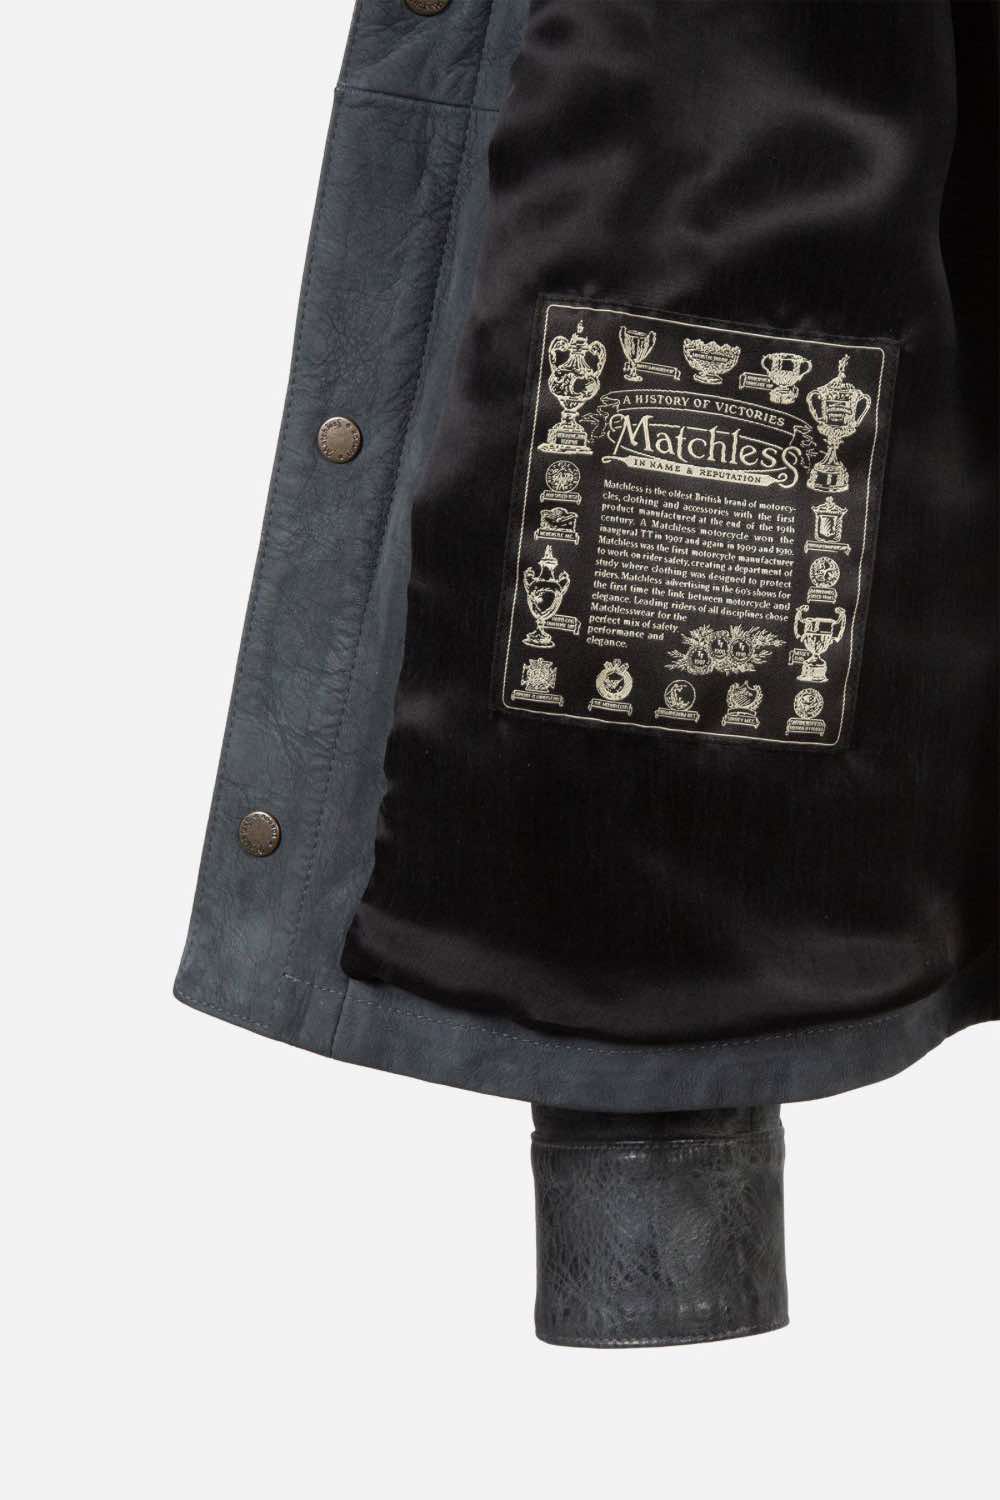 Matchless Shoreditch Shirt Men's Leather Jacket Antique Black  - Close Up Logo Patch